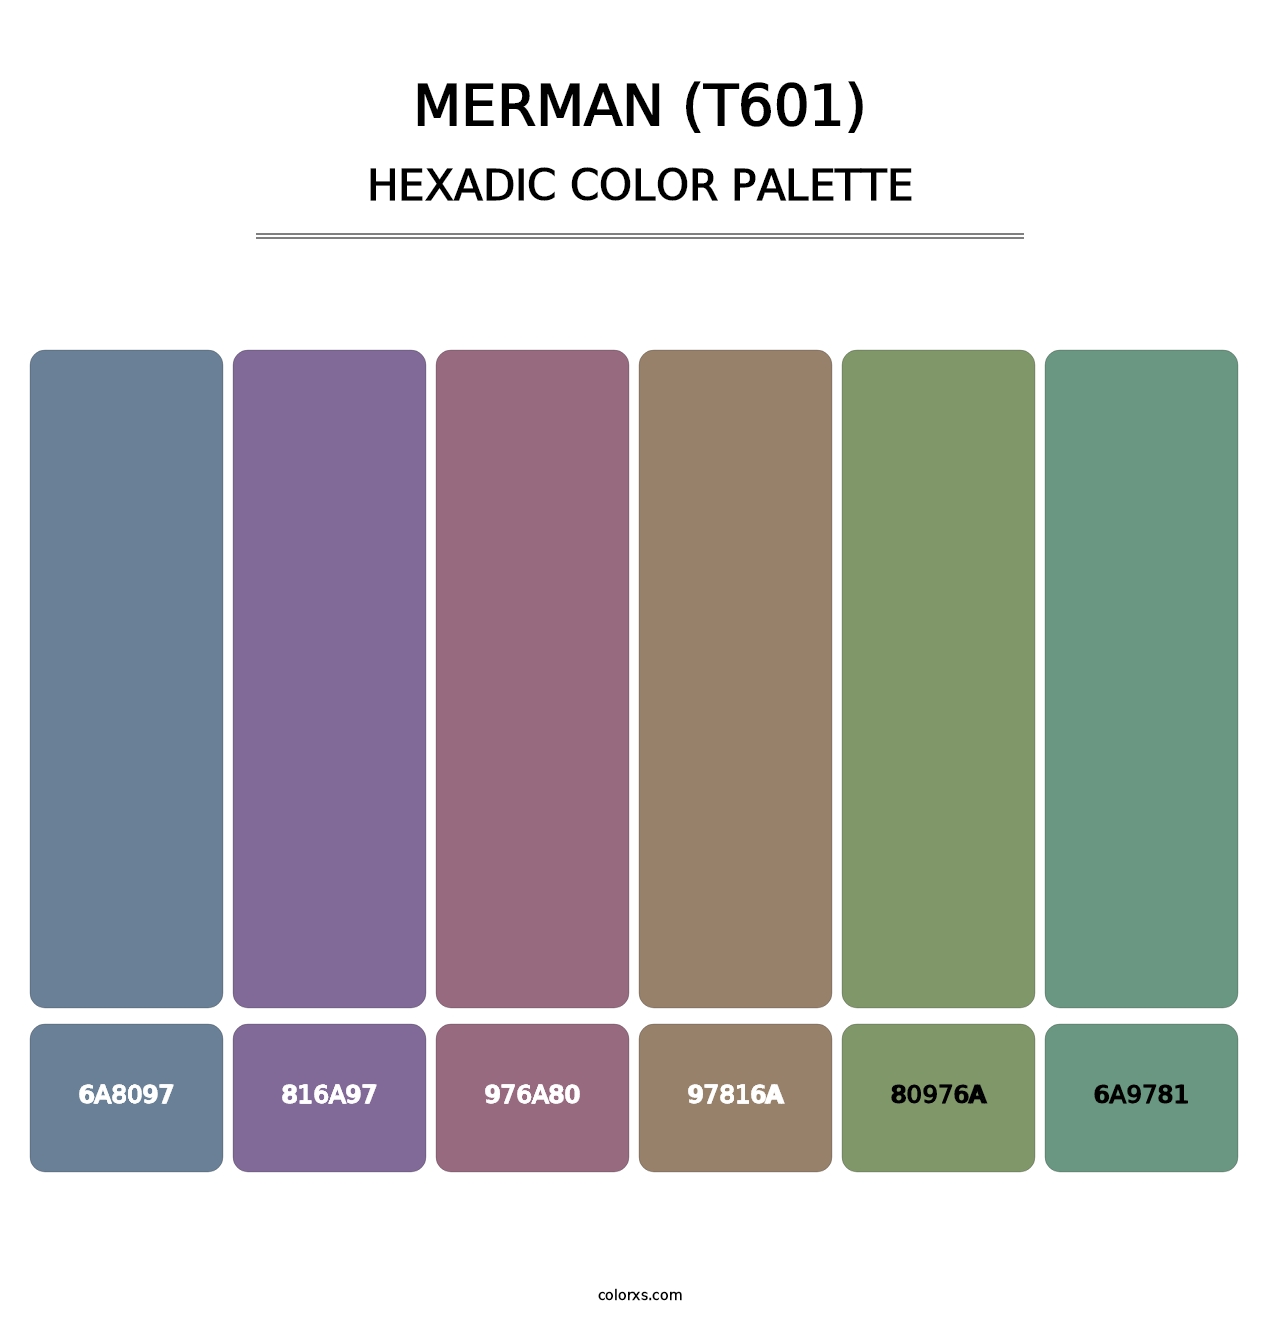 Merman (T601) - Hexadic Color Palette